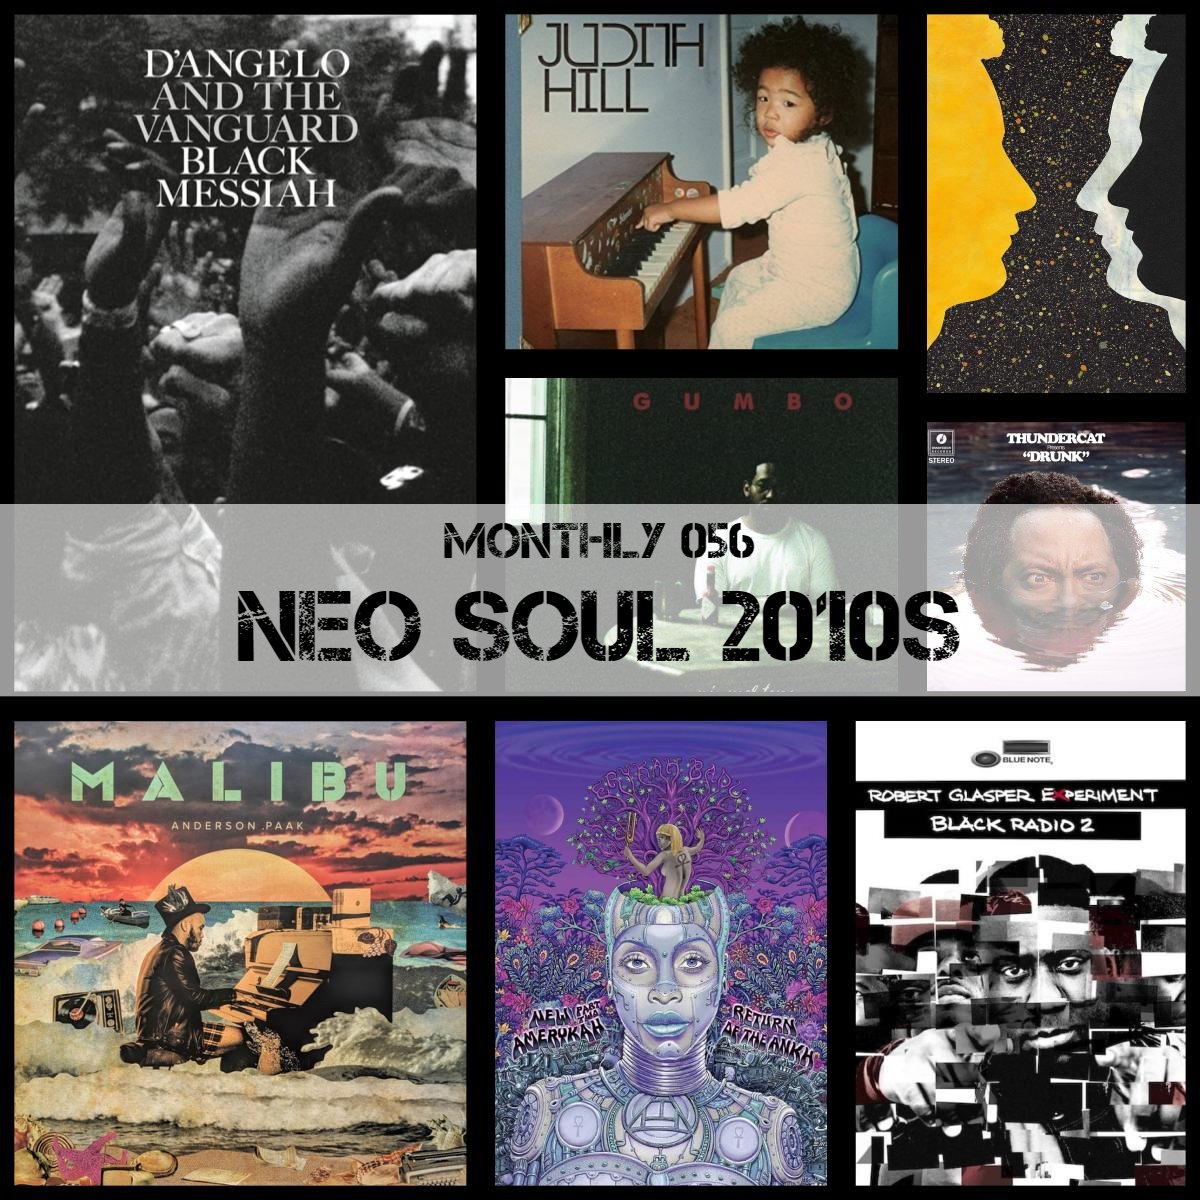 #インターネットラジオ 「THE RADIO」
the-radio.net

​今日はMonthlyを更新！テーマは【Neo Soul 2010s】

2010年代のネオソウル傑作ALから、春に心地よい のどかで気持ちの良いメロウな名曲をセレクト。

#neosoul #neosoulmusic #rnb #rnbmusic #rnbclassics #blackmusic 

2024.5.16